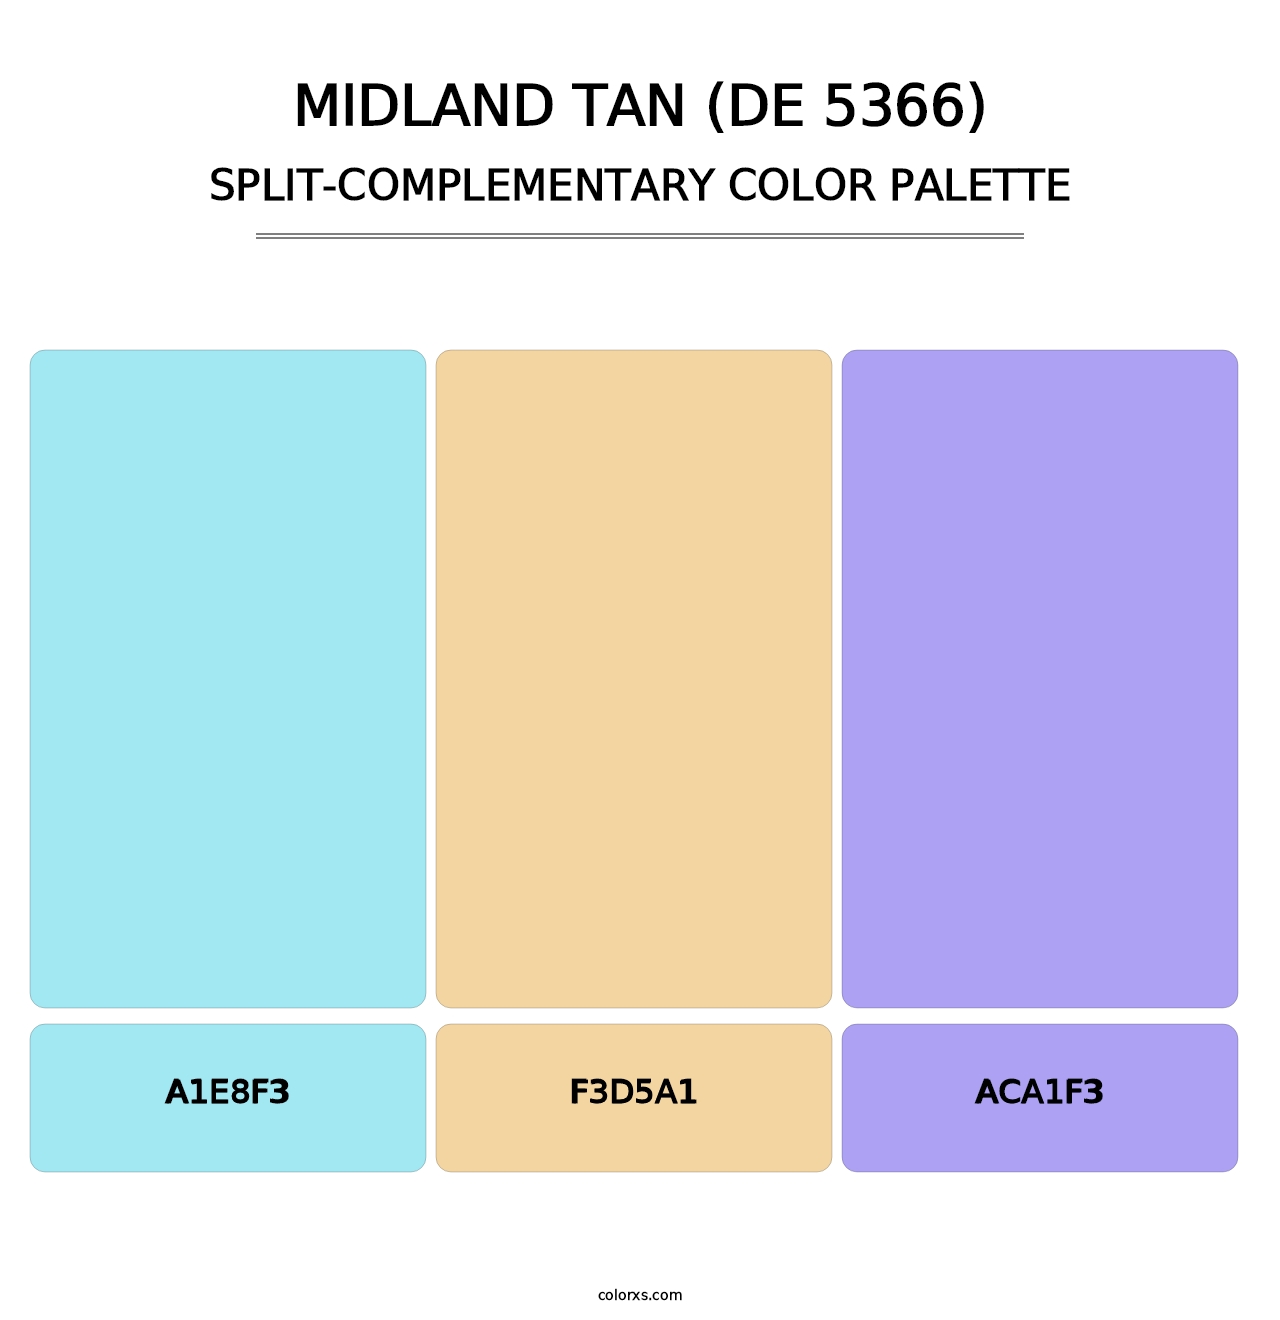 Midland Tan (DE 5366) - Split-Complementary Color Palette